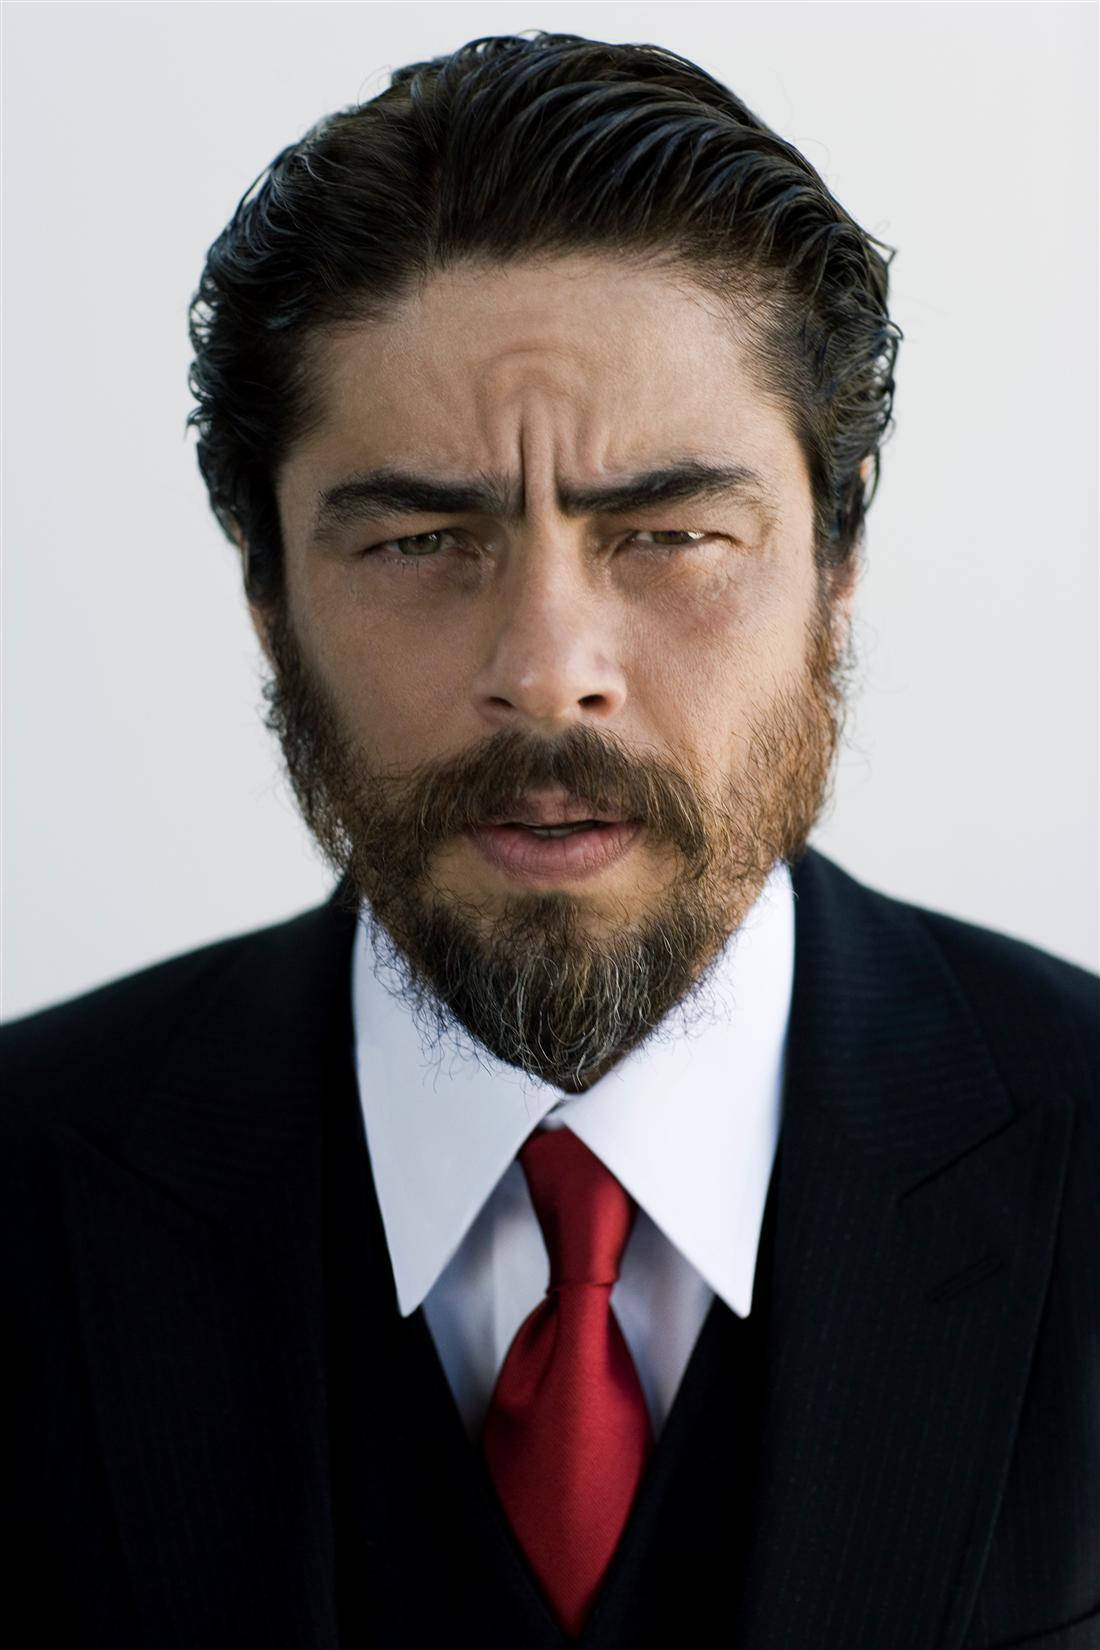 Benicio Del Toro 2012 Close Up Portrait Picture